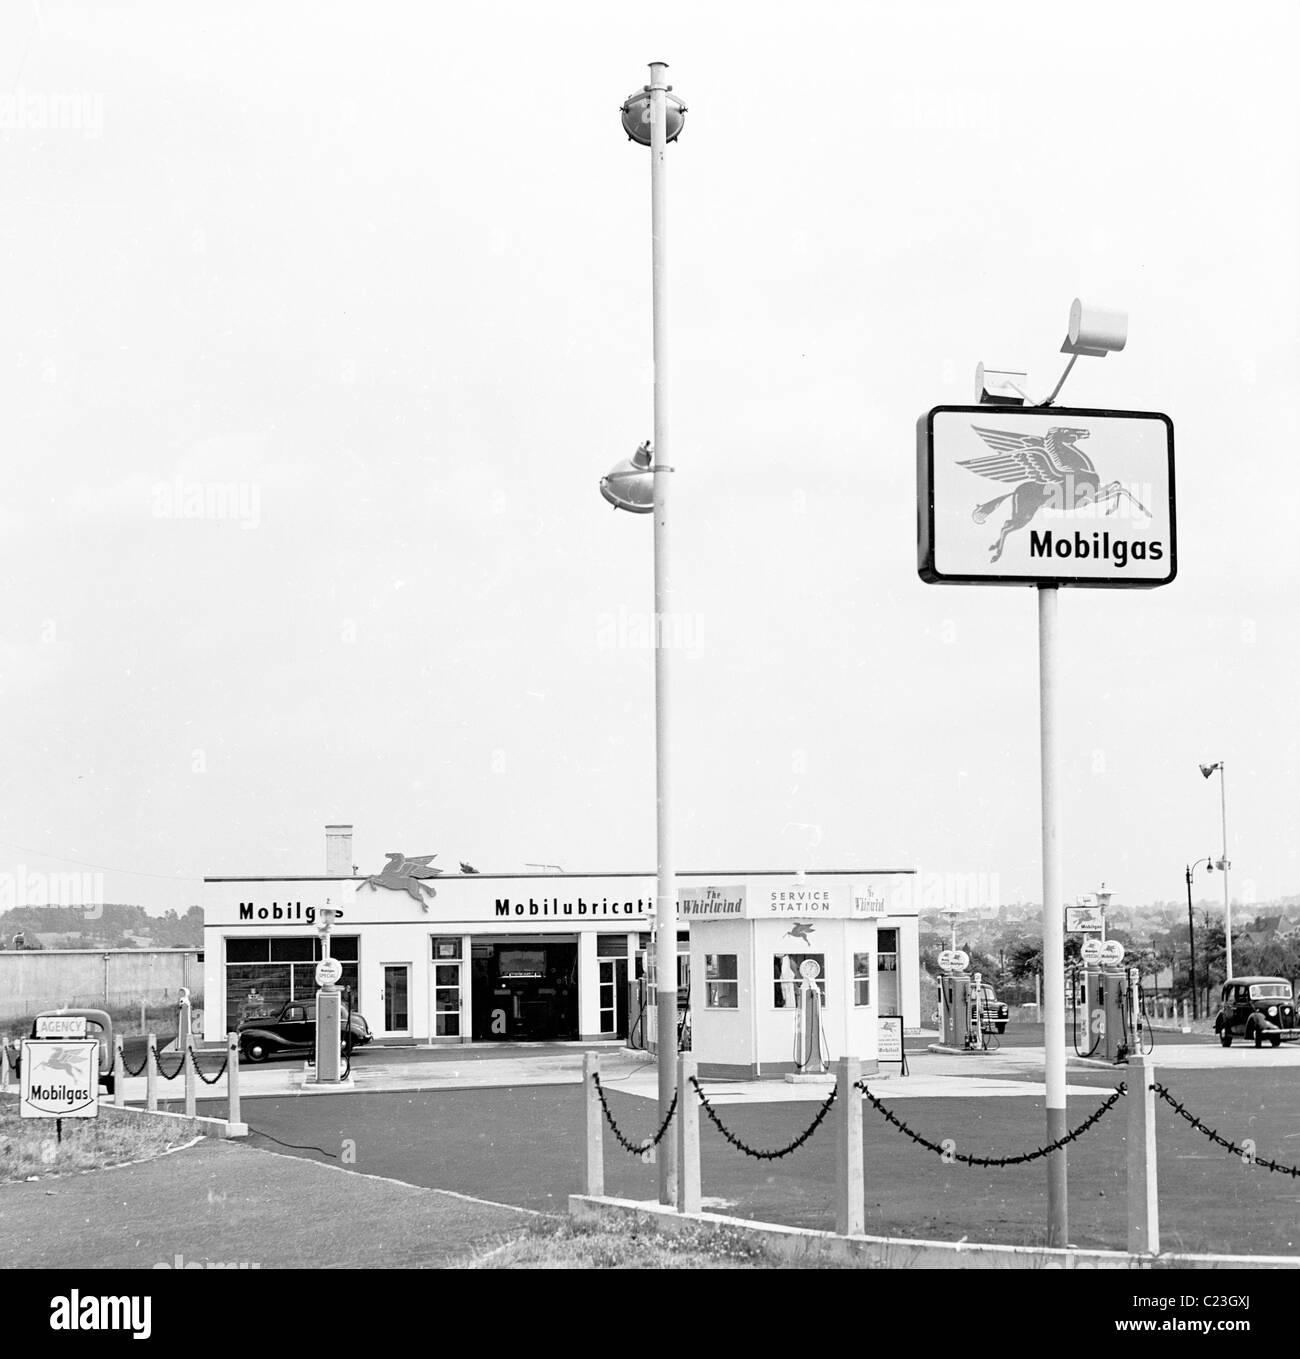 Der Vorplatz und die Gebäude einer der 1950er Jahre Mobilgas Tankstelle "The Whirlwind" in diesem historischen Bild von J Allan Cash. Stockfoto